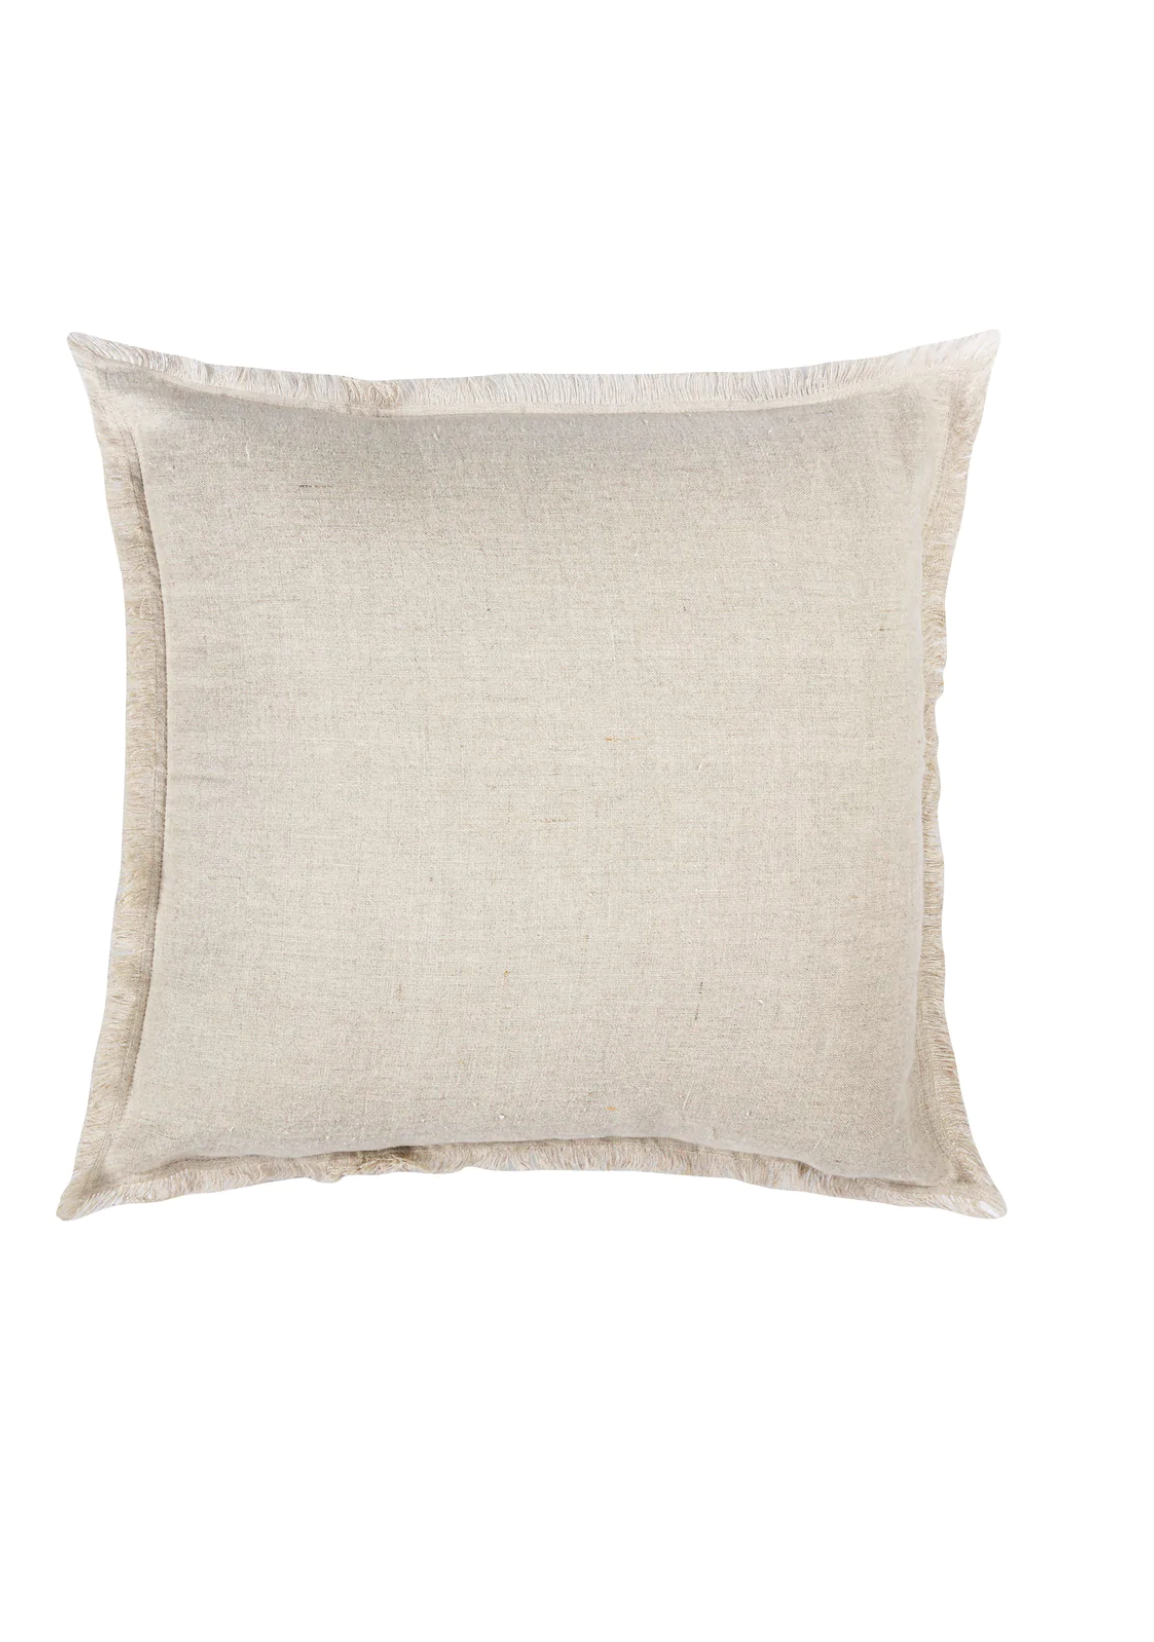 Beige Linen Pillows